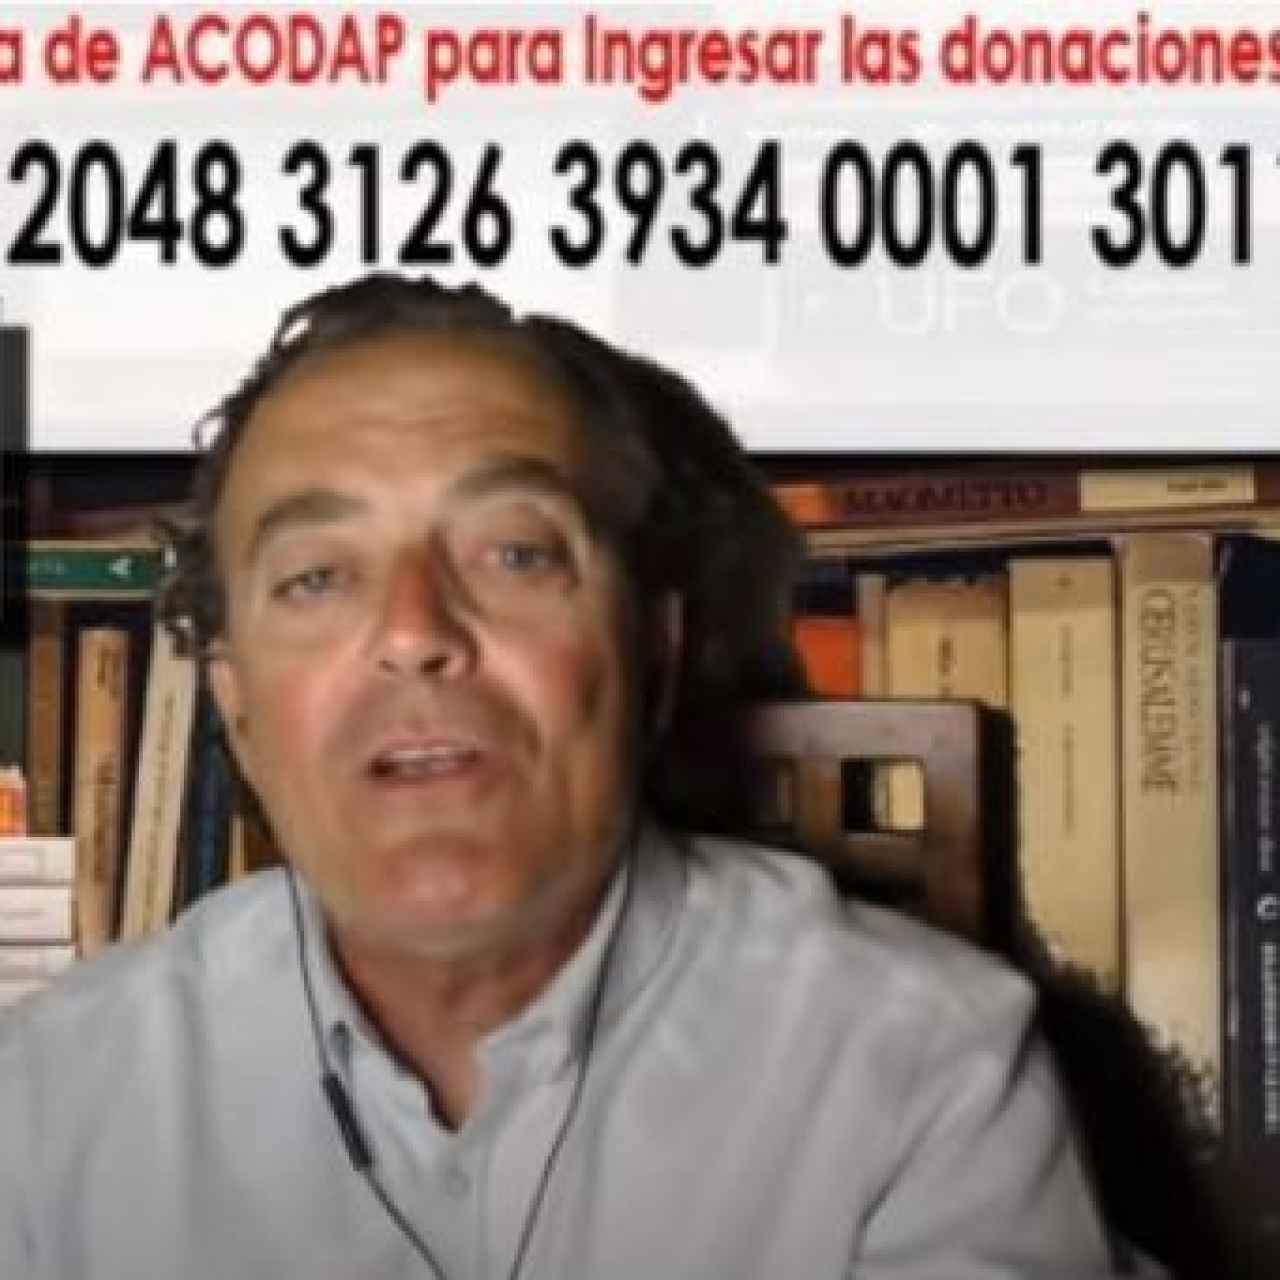 Fernando Presencia pidiendo donativos./